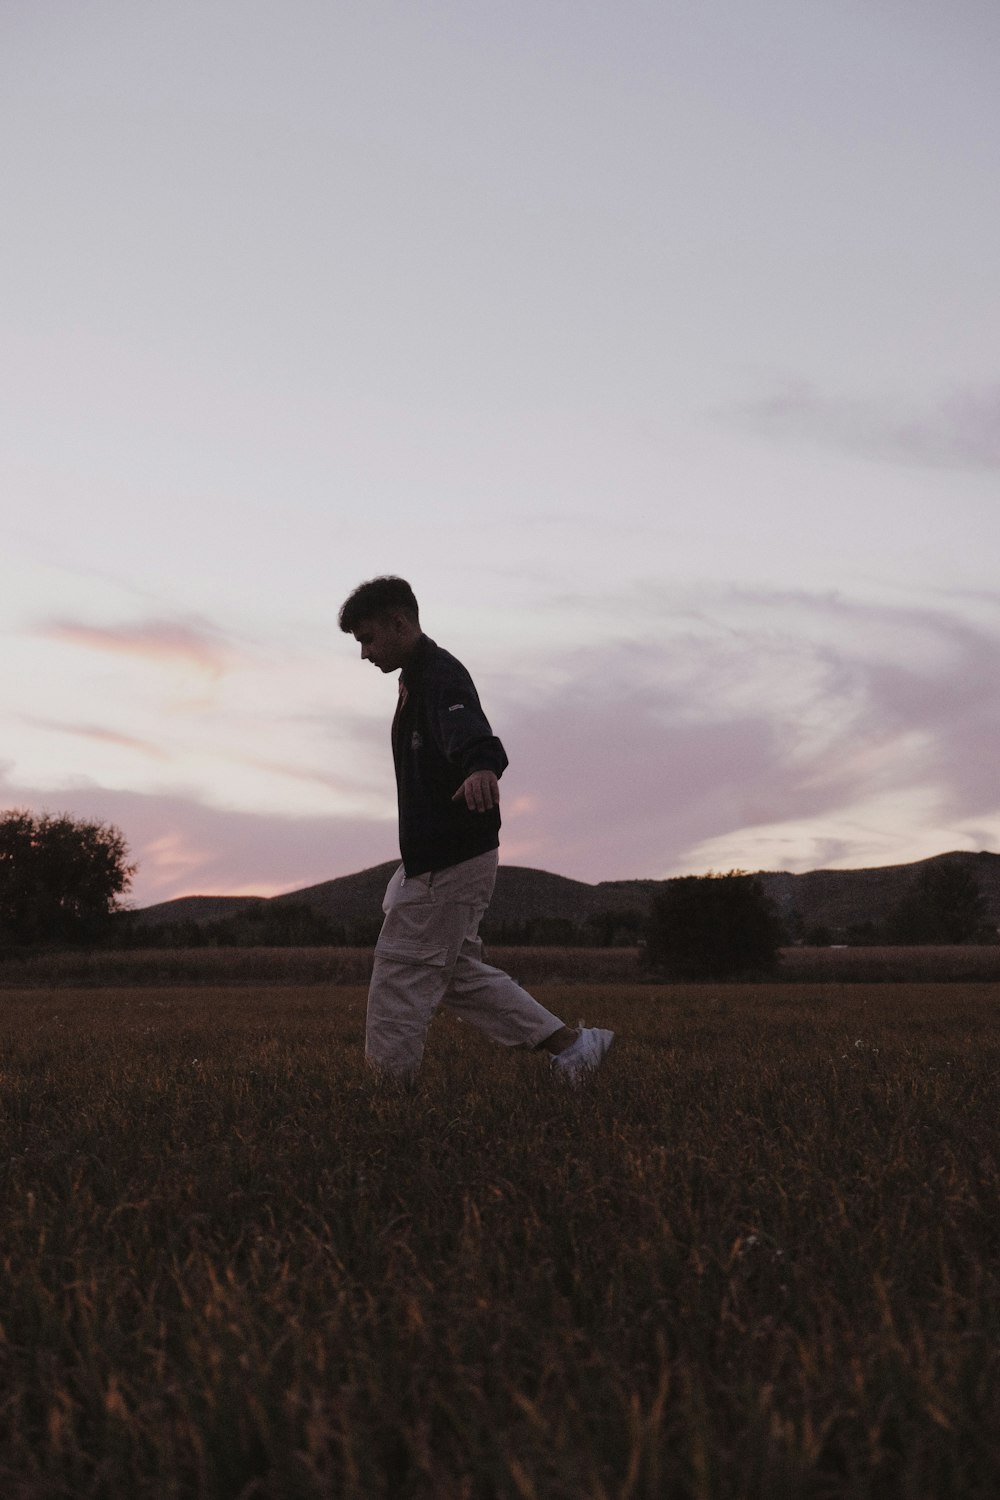 a man walking through a field at sunset